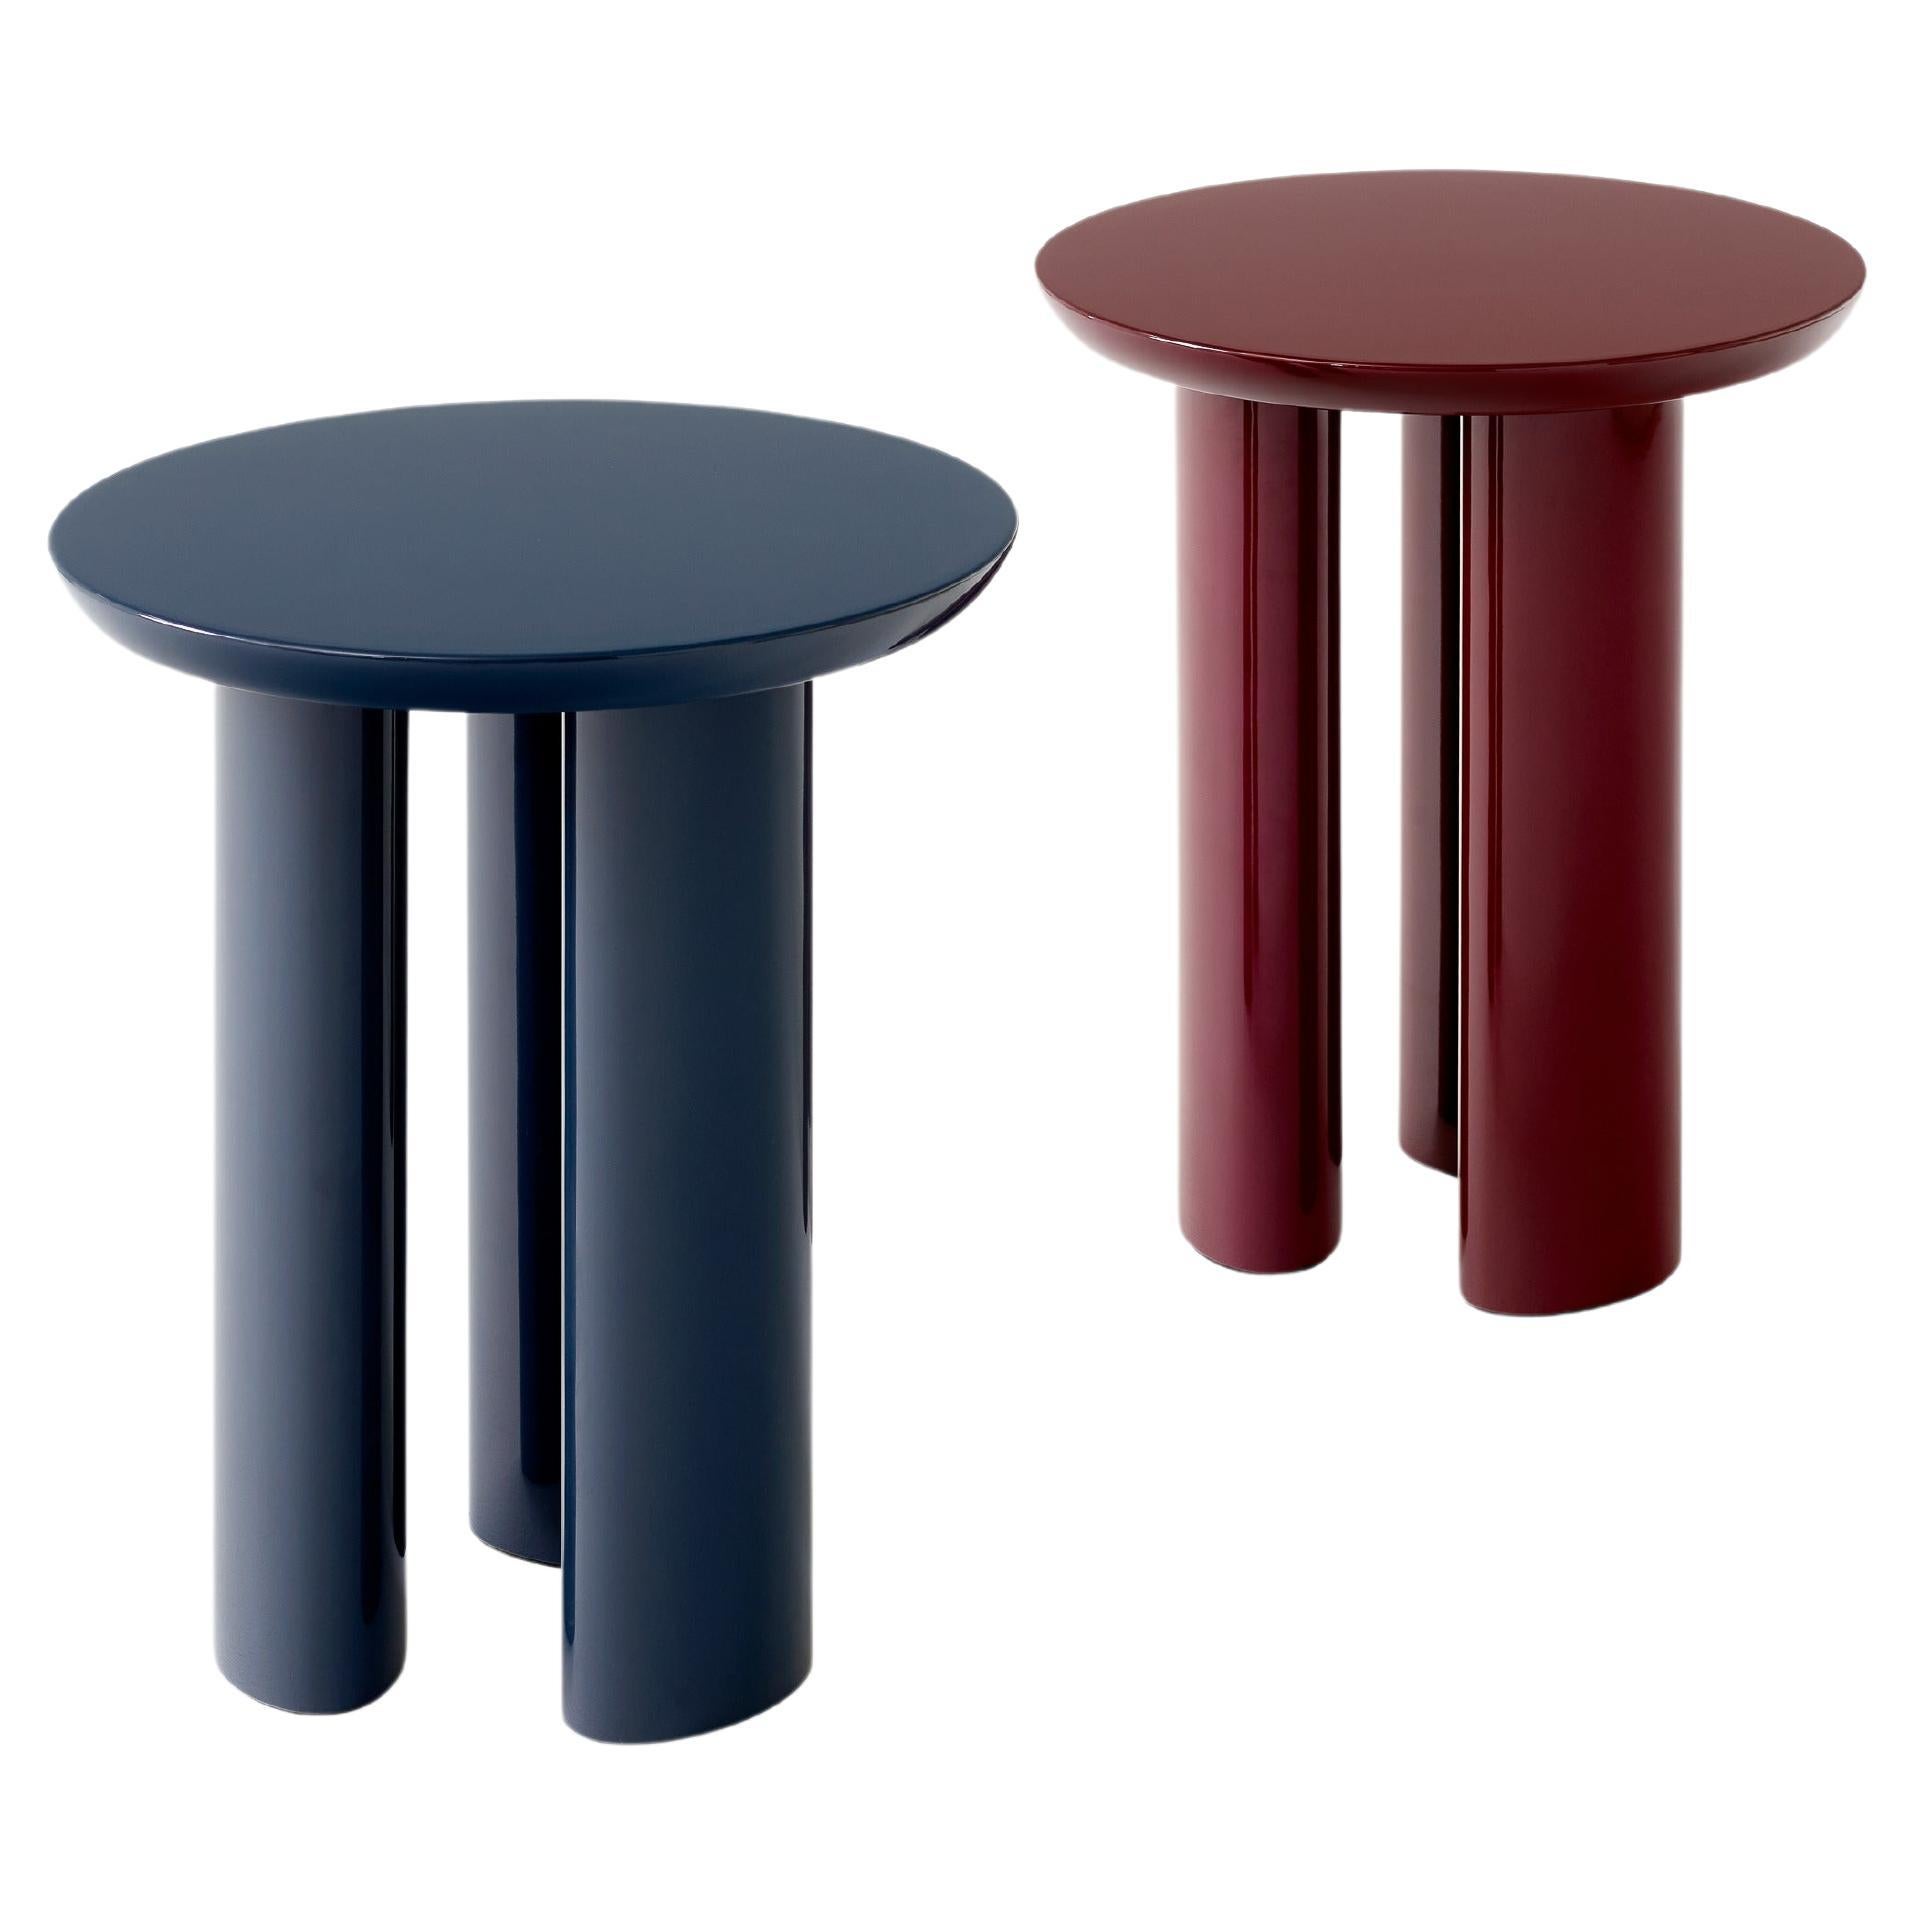 Ensemble de tables Tung JA3-Burgundy Red & Steel Blue-Side Table, par John Astbury pour &T